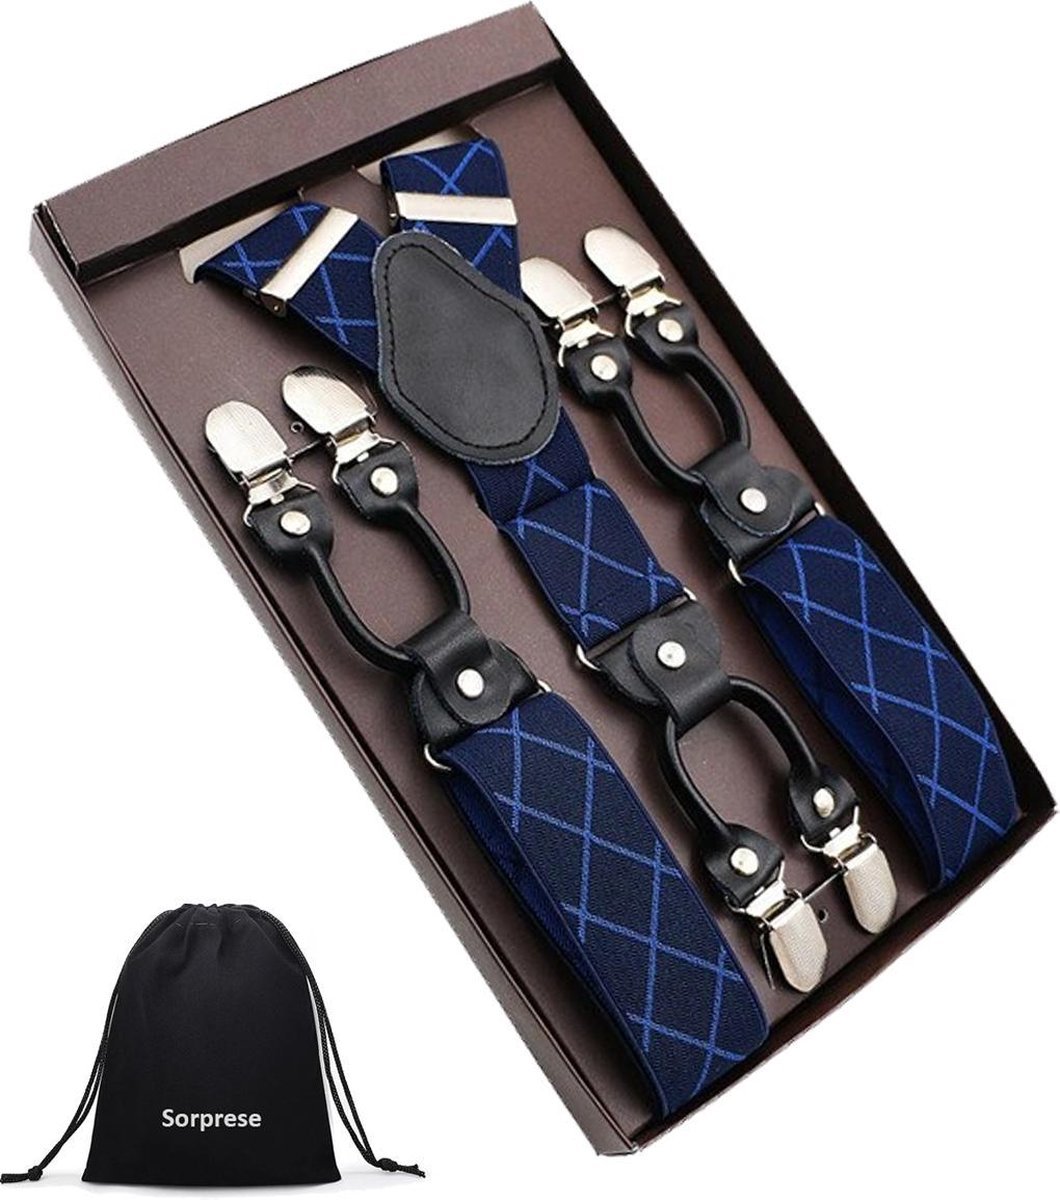 Luxe chique - heren bretels - donkerblauw geruit met blauw design - zwart leer - 6 extra stevige clips